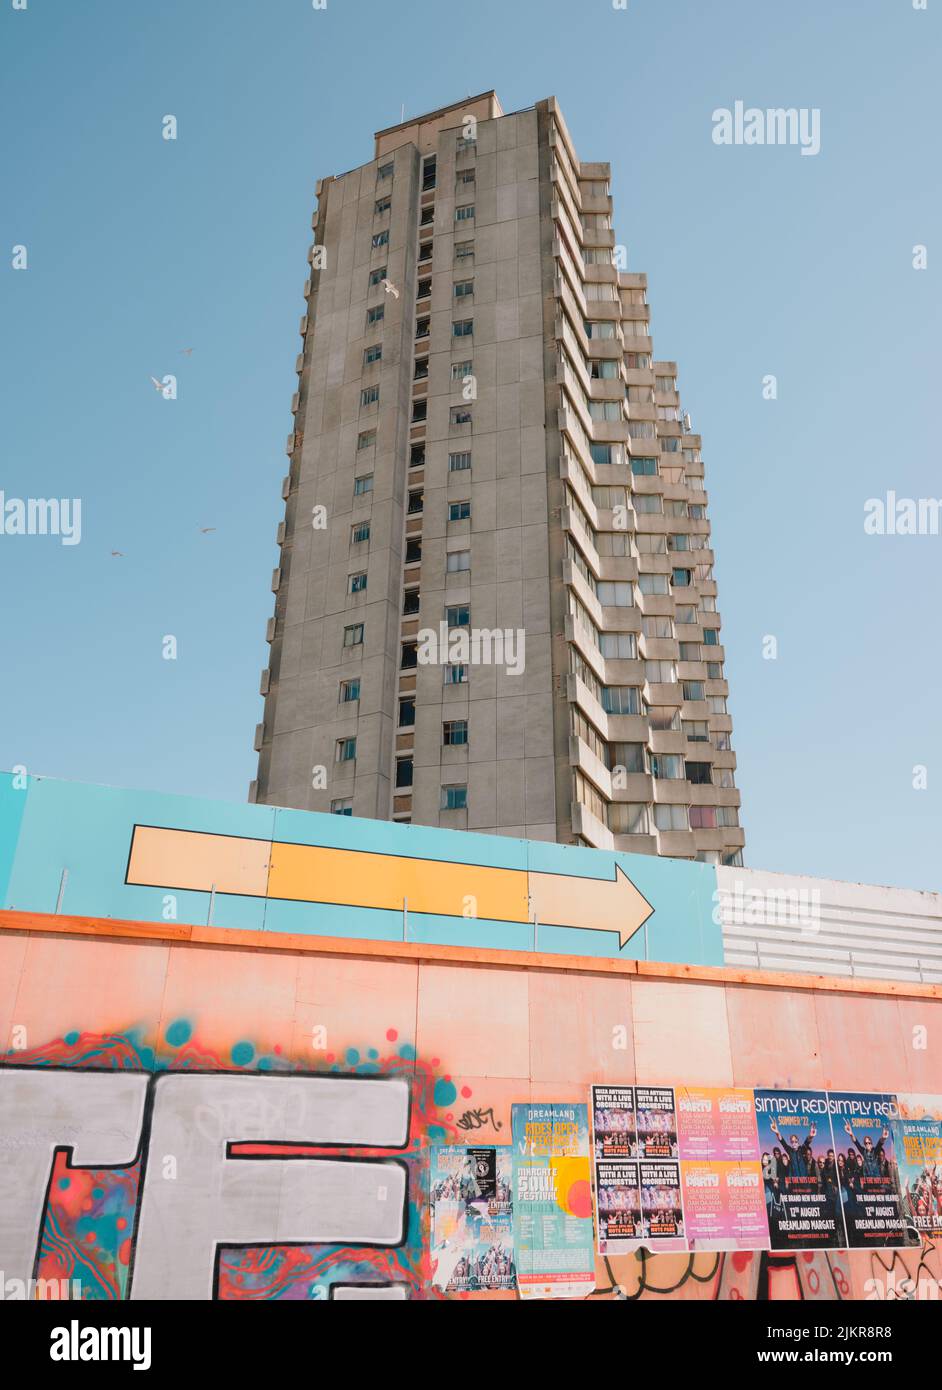 Arlington House torre bloque de apartamentos residenciales de 58 metros de altura y 18 pisos, Margate Kent, Inglaterra, Reino Unido. Arquitectura brutalista construida en 1964 Foto de stock